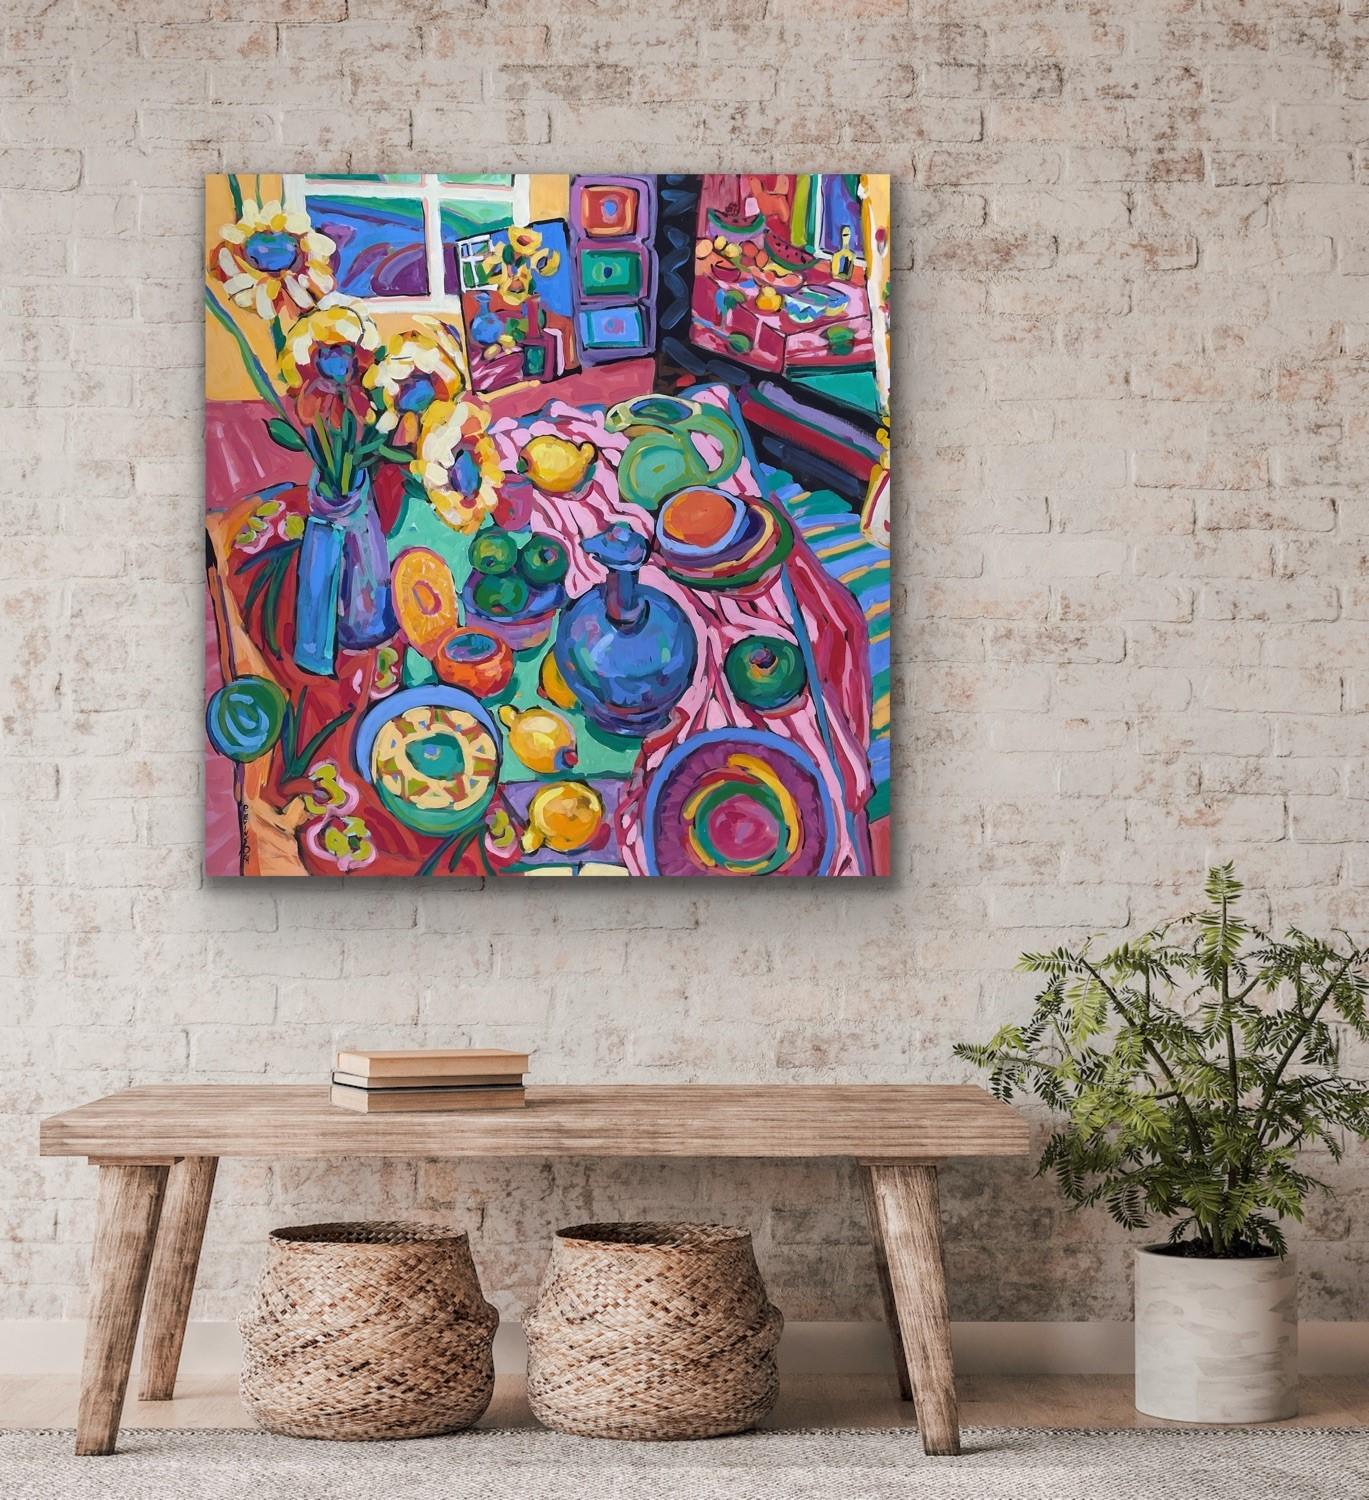 Obst Fancy farbenfrohes abstraktes Interieur 48 x 48 Kasein auf Leinwand -- Ein Angebot machen (Abstrakter Impressionismus), Painting, von Patsy Evins